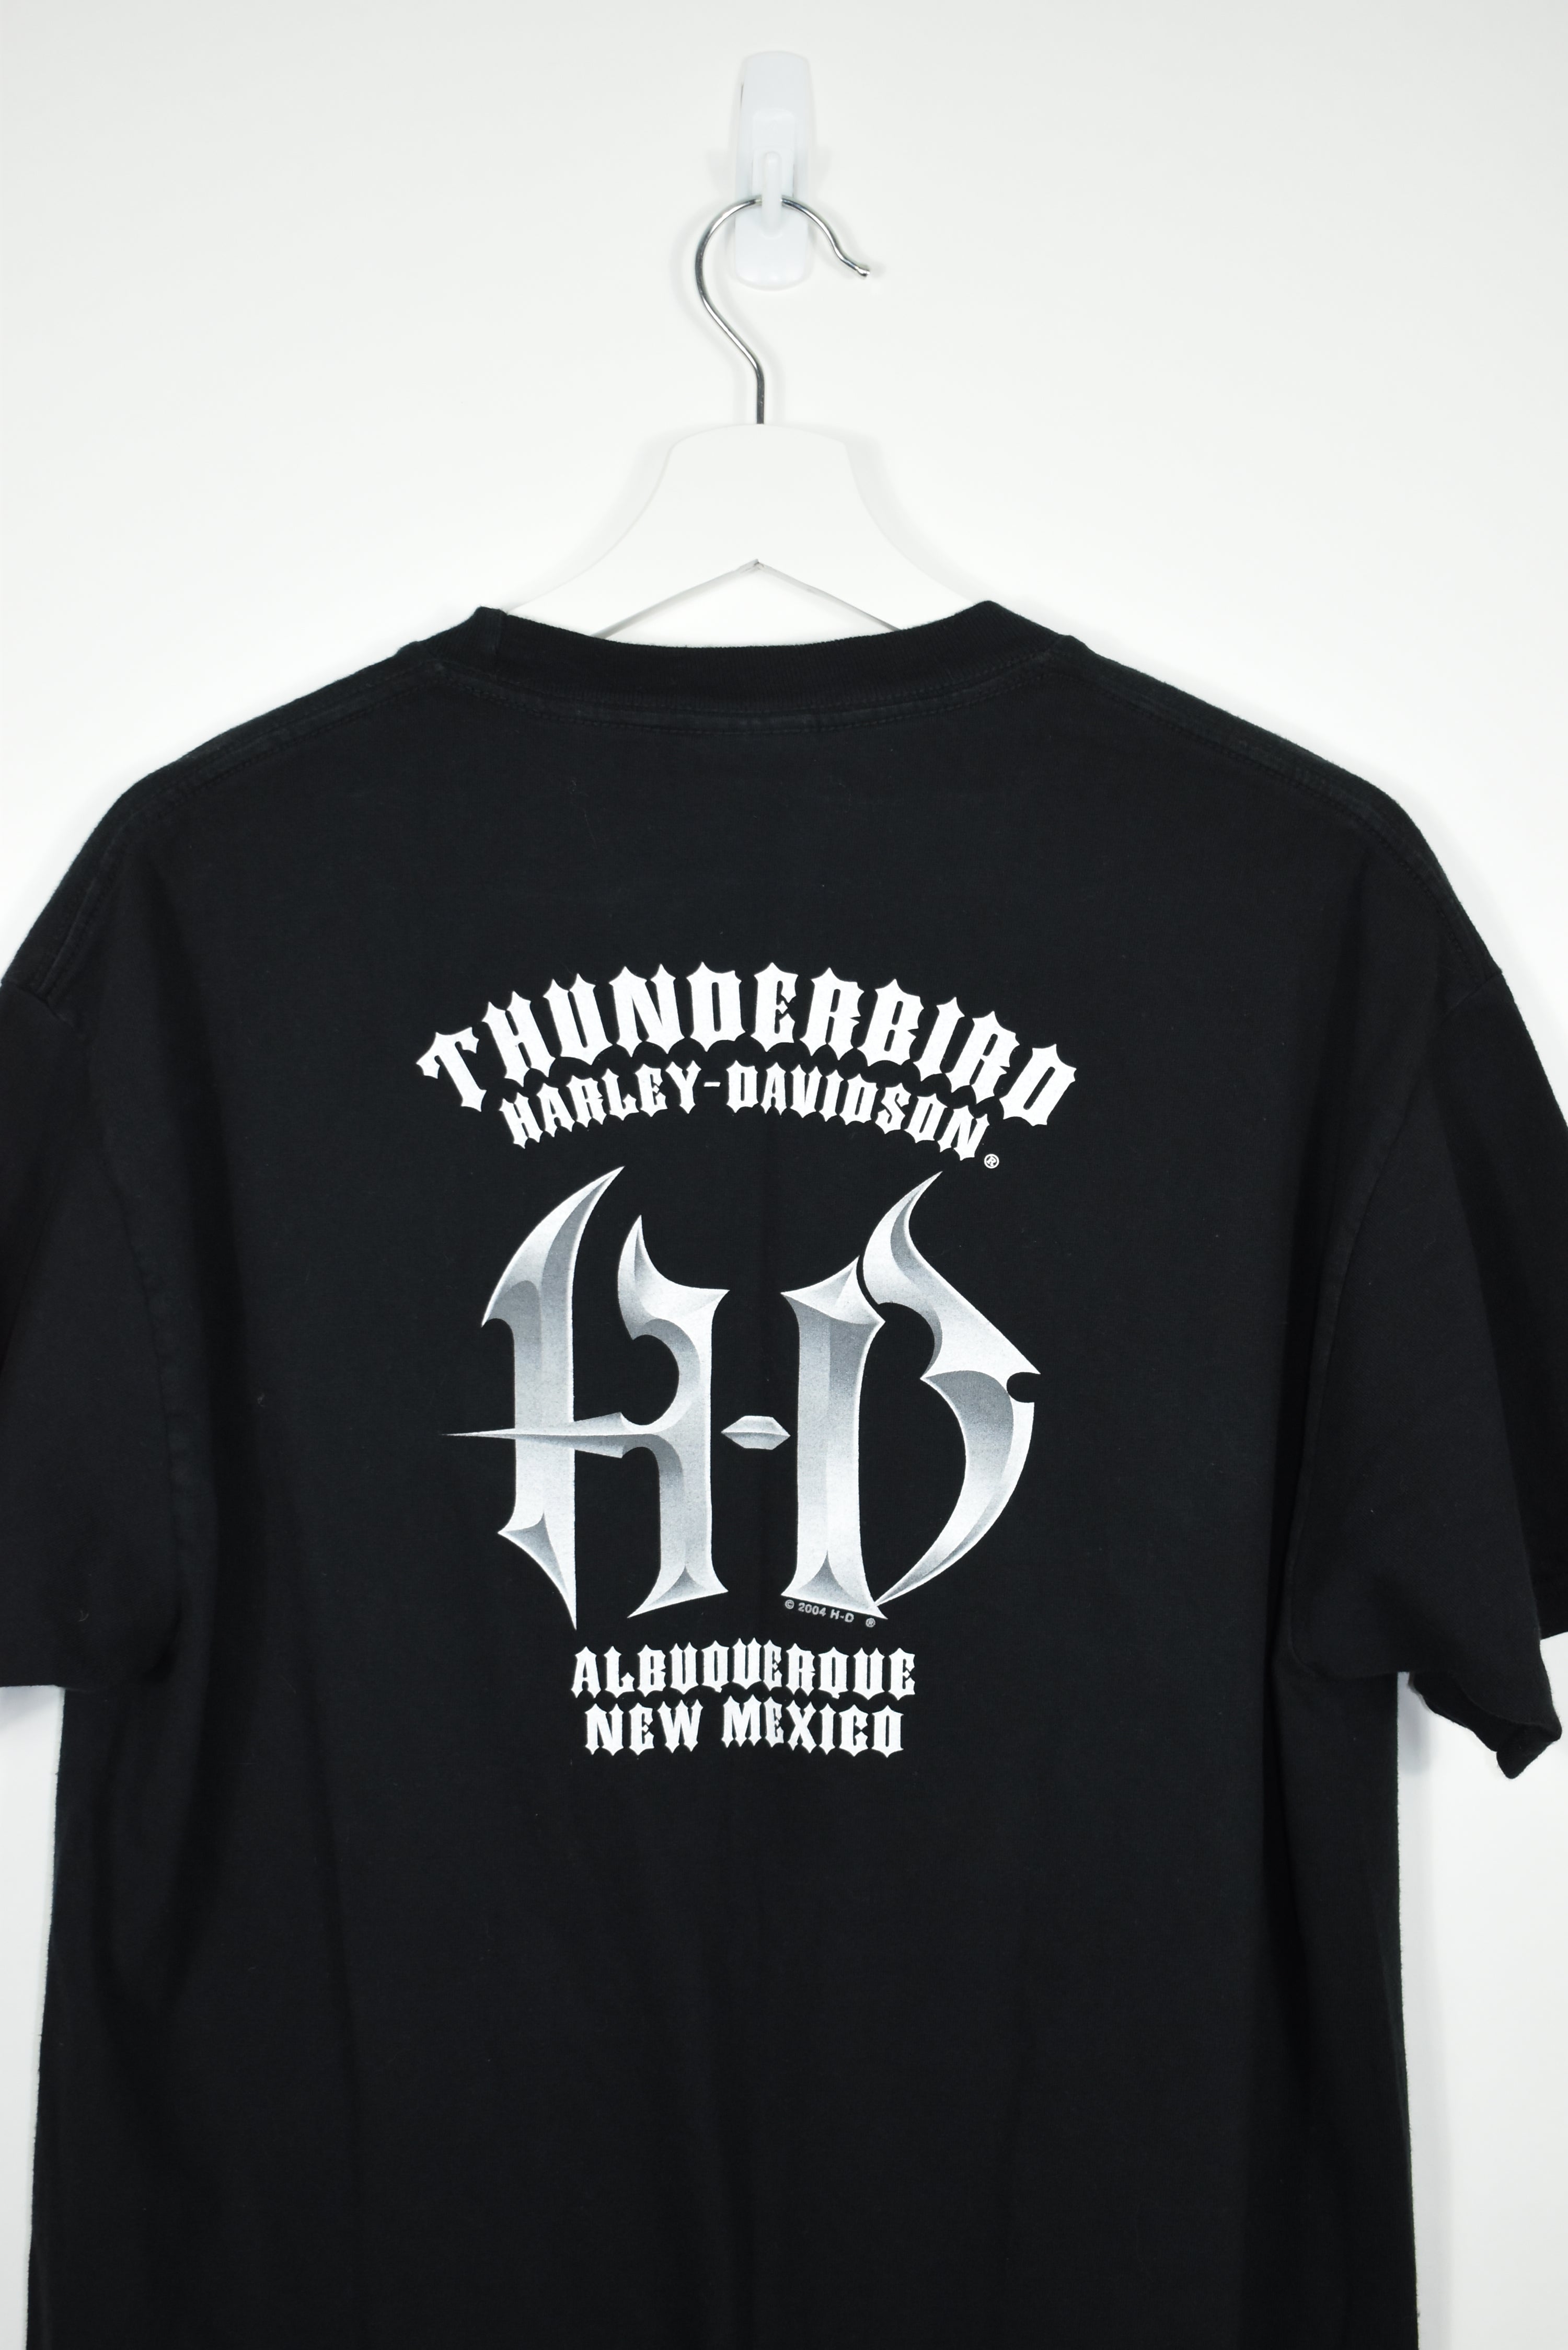 Vintage Harley Davidson T Shirt Large